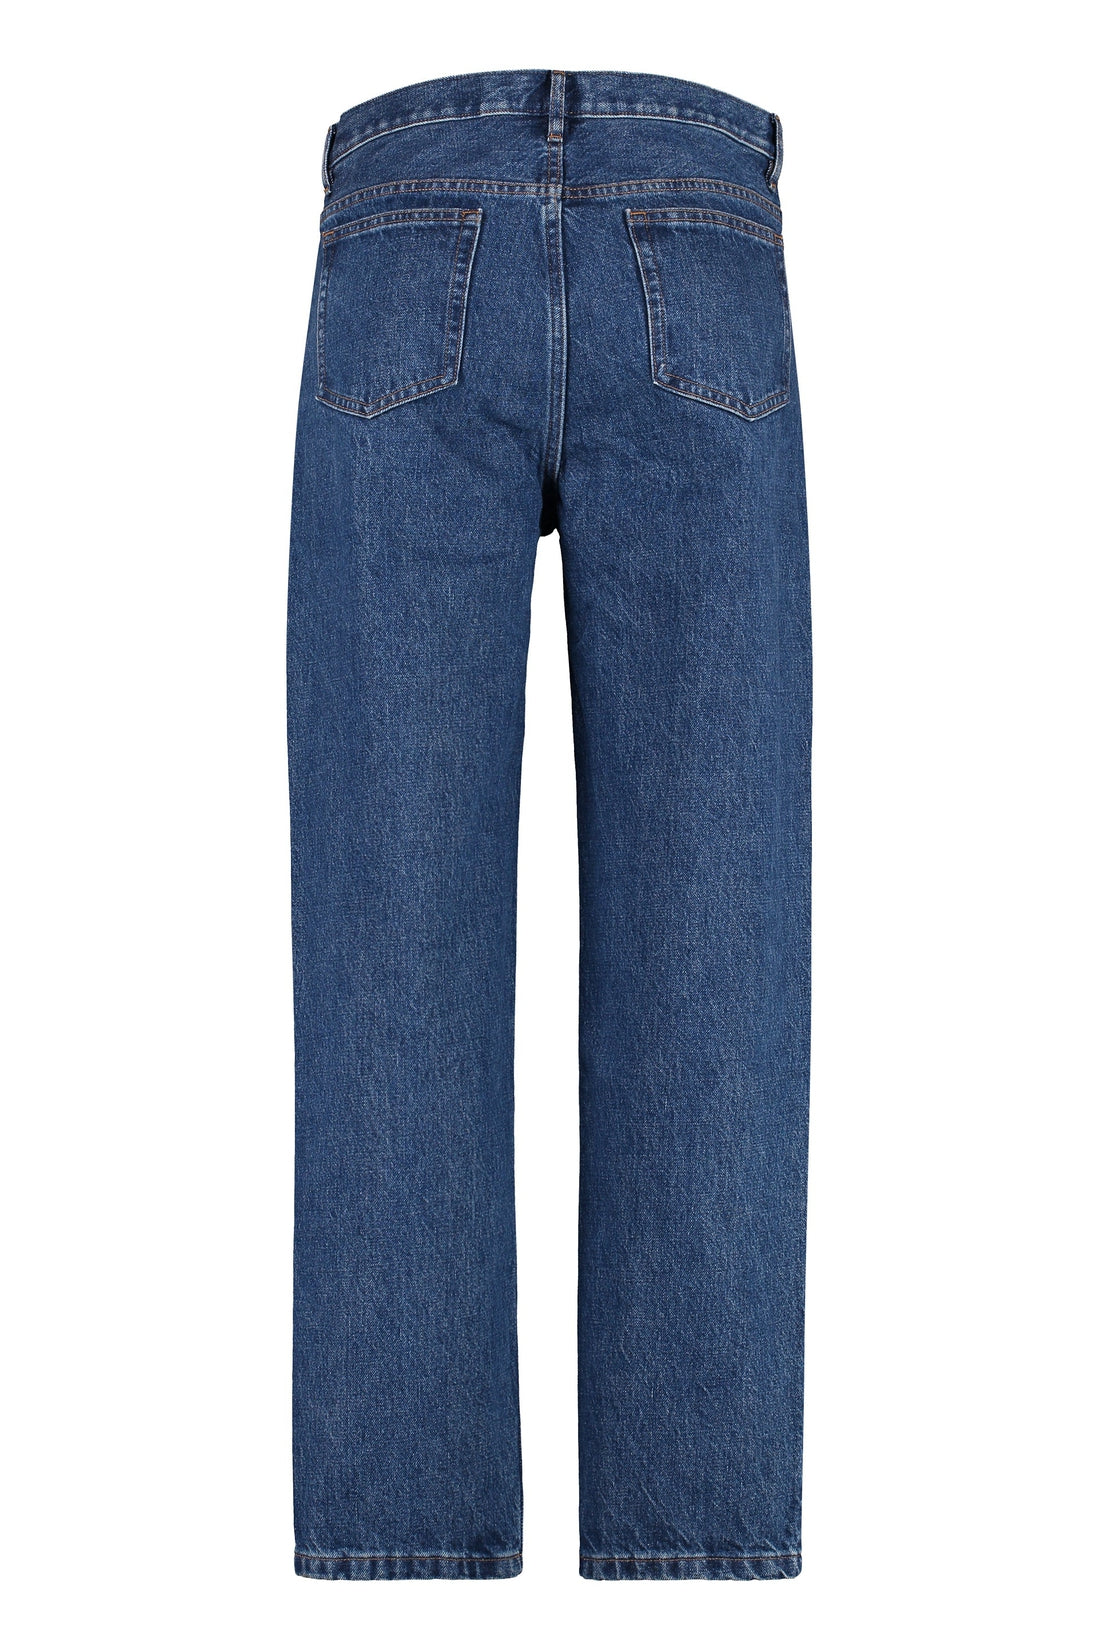 A.P.C.-OUTLET-SALE-Martin 5-pocket jeans-ARCHIVIST